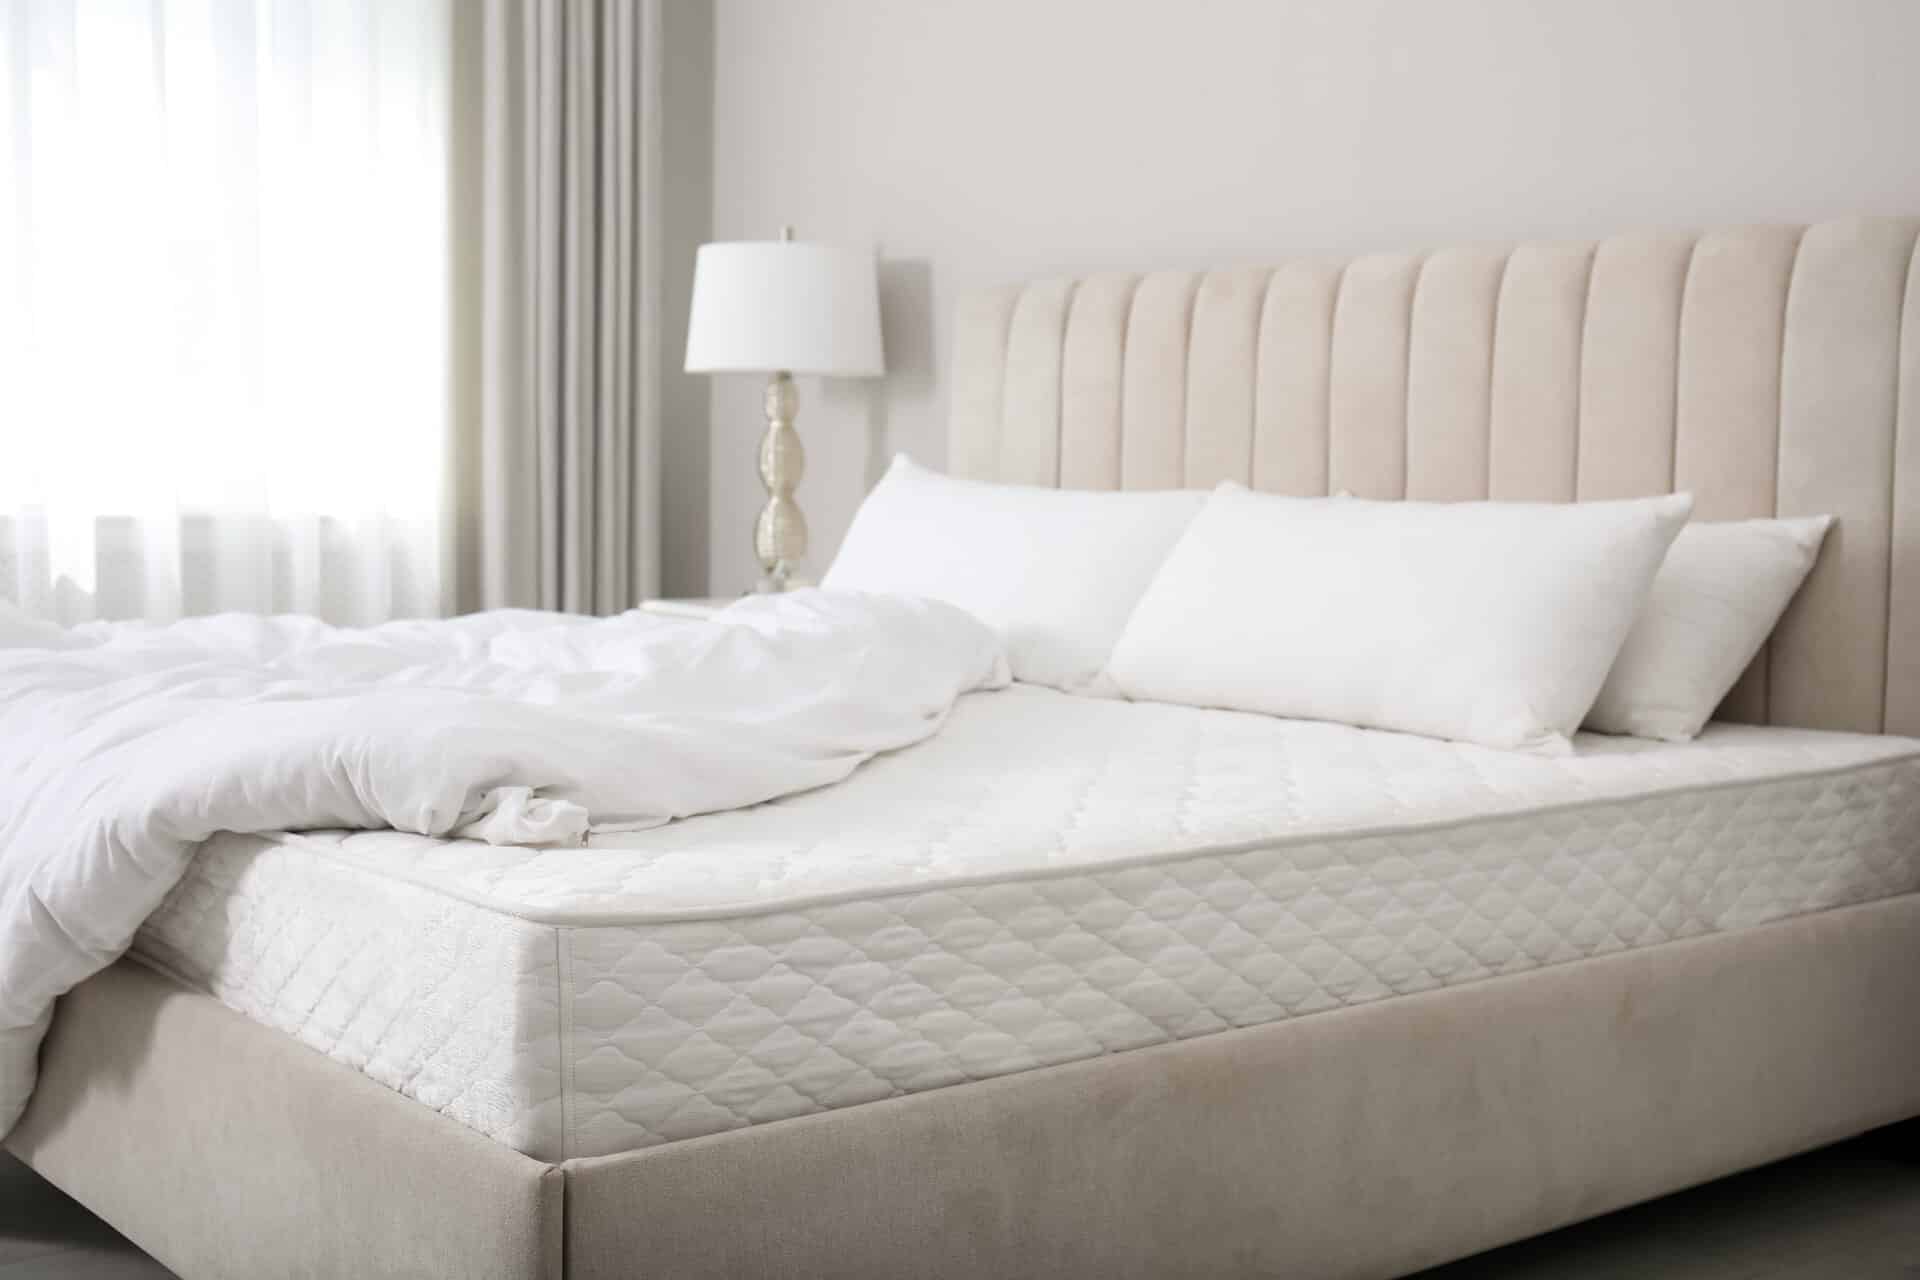 Komfortables Hotelbett in hellgrauem Tönen im hellen Zimmer mit weißen Kissen und weißer Bettdecke, die halb aufgedeckt ist.